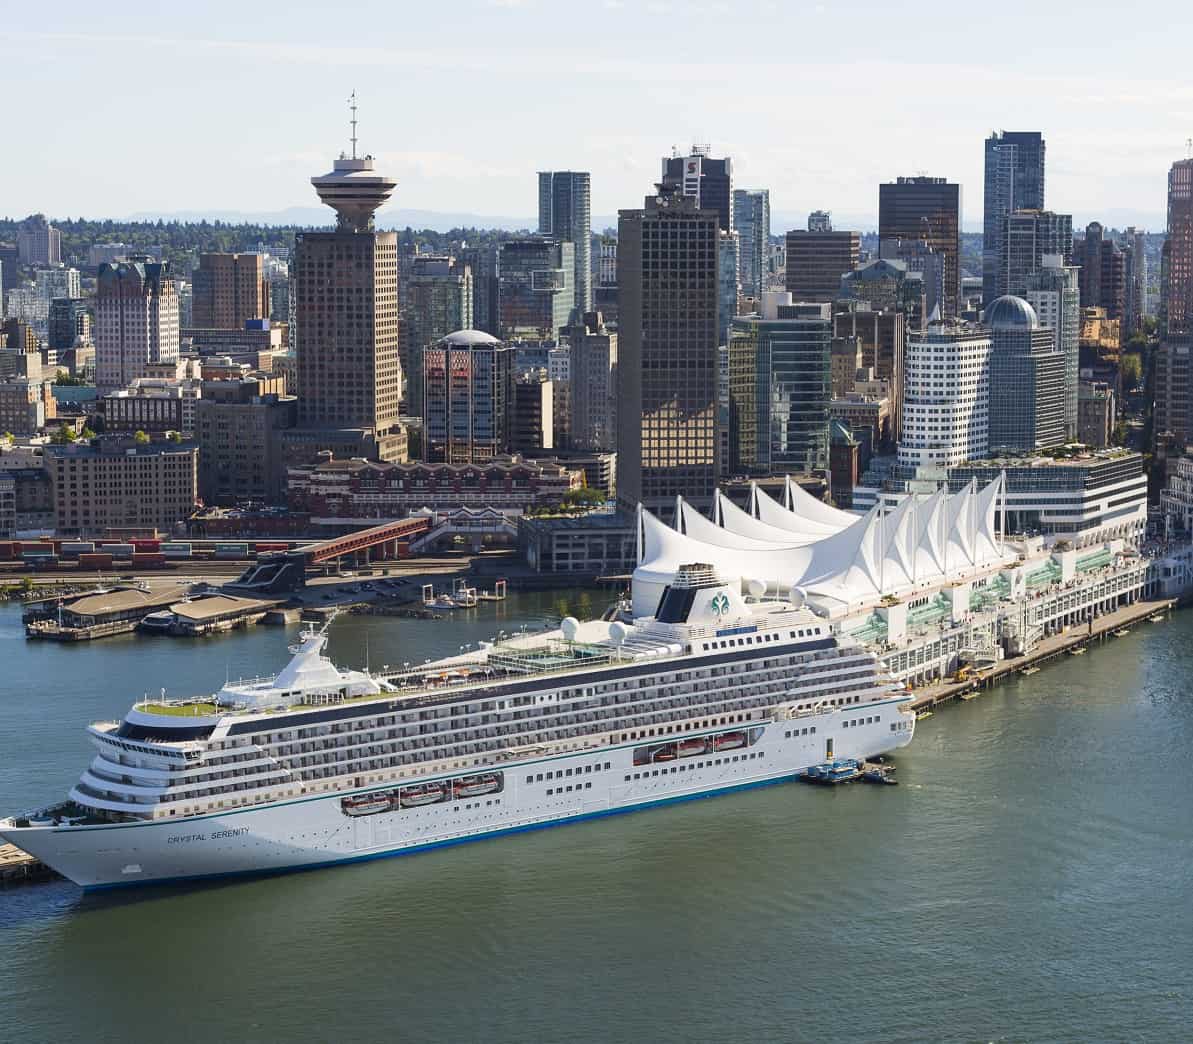 कॅनडा क्रूझ जहाजांसाठी नवीन पर्यावरणीय उपाय आणतो